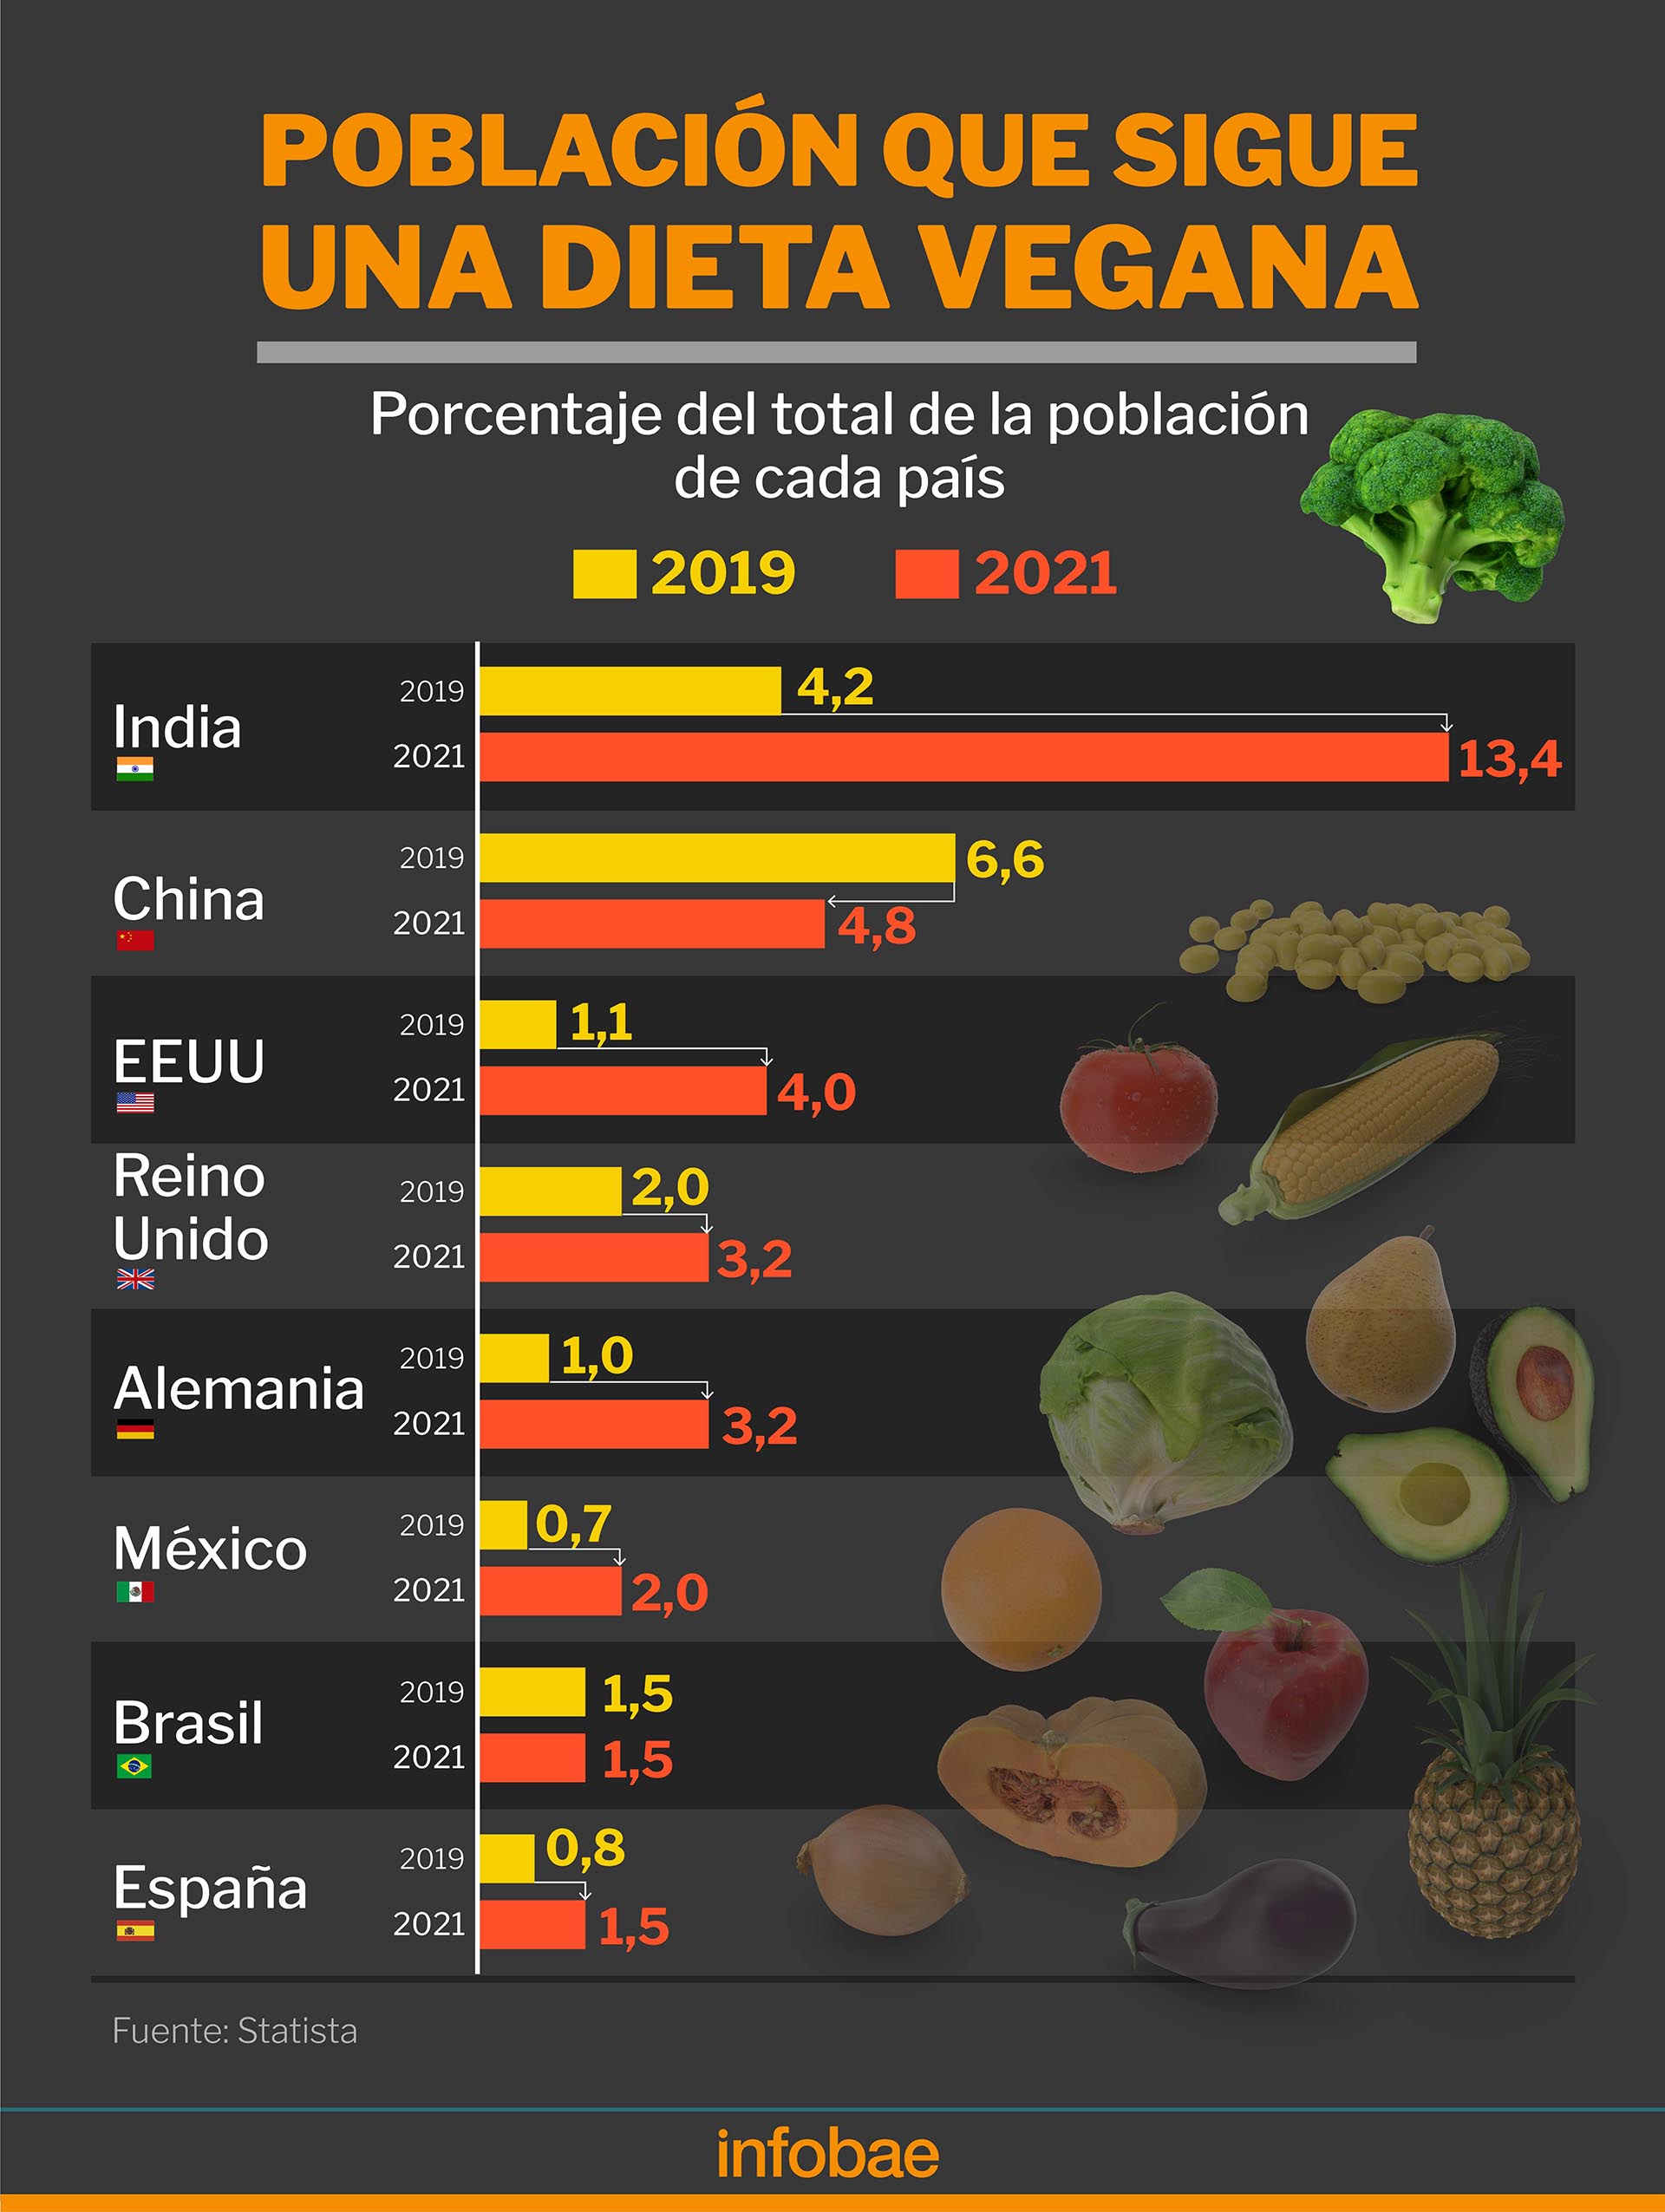 La estimación de población vegana en cada país